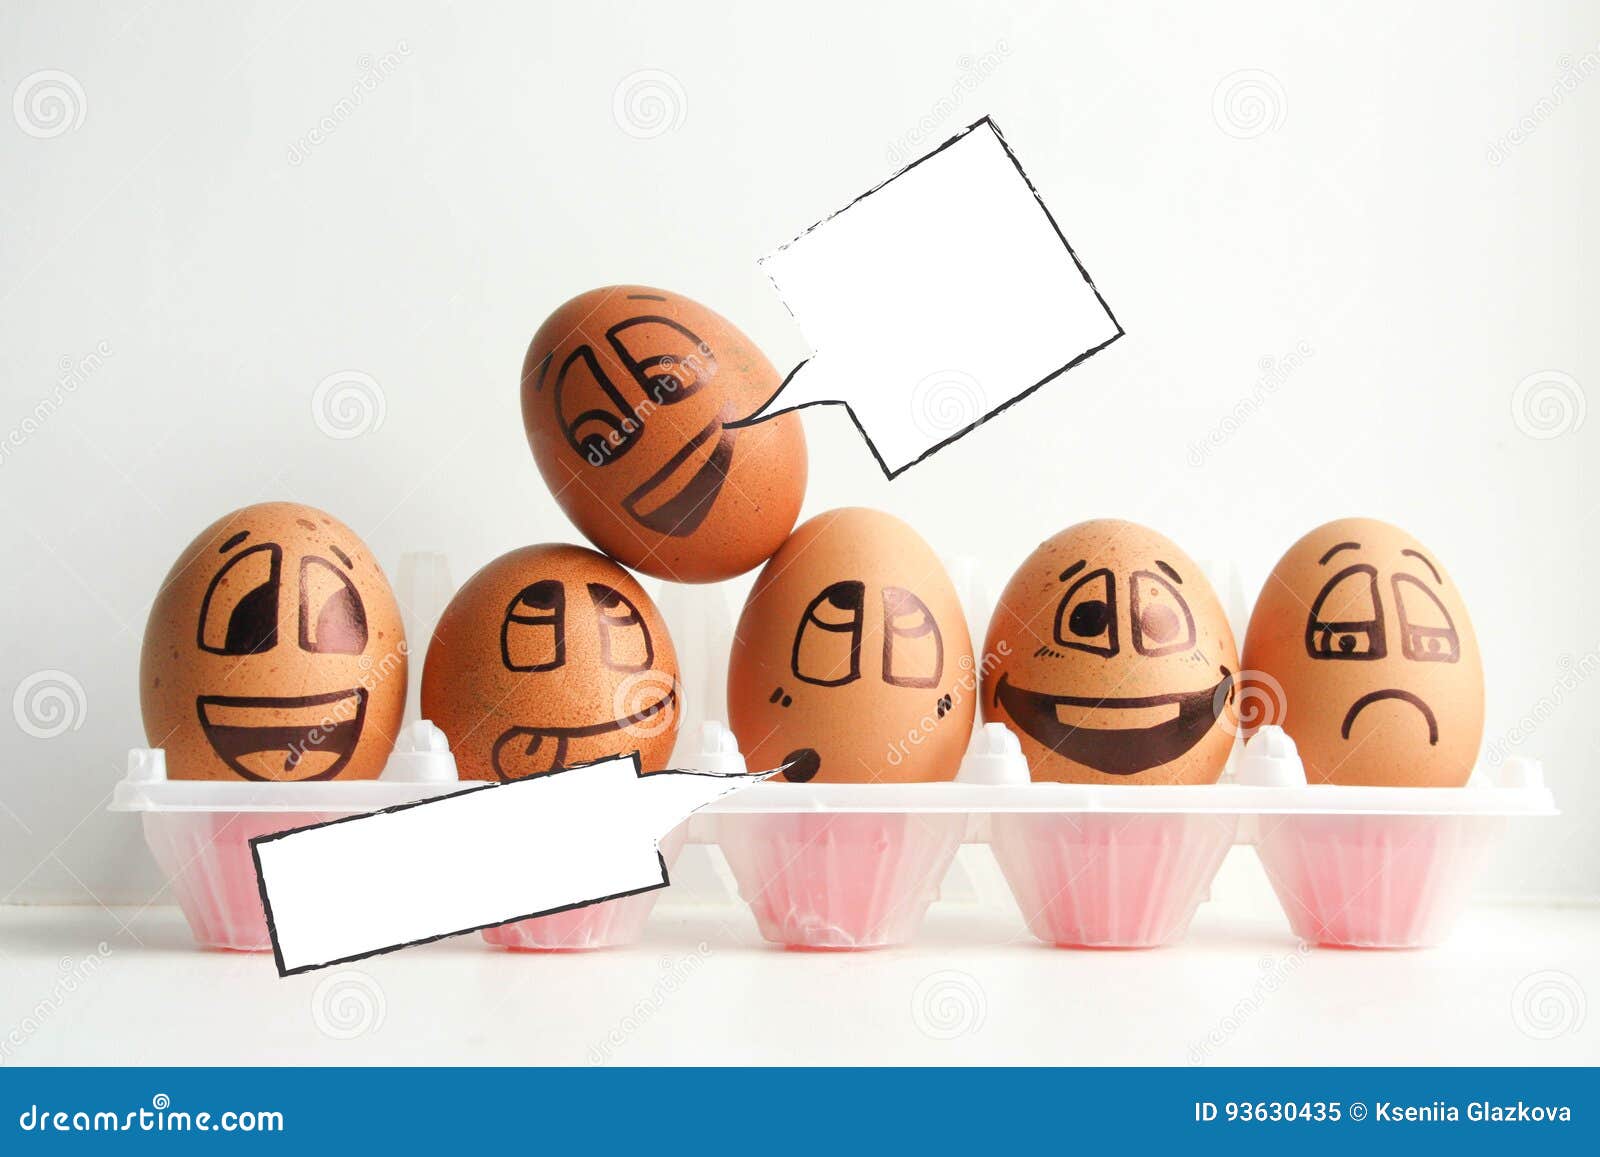 Thinking Egg Stock Illustrations – 913 Thinking Egg Stock Illustrations,  Vectors & Clipart - Dreamstime